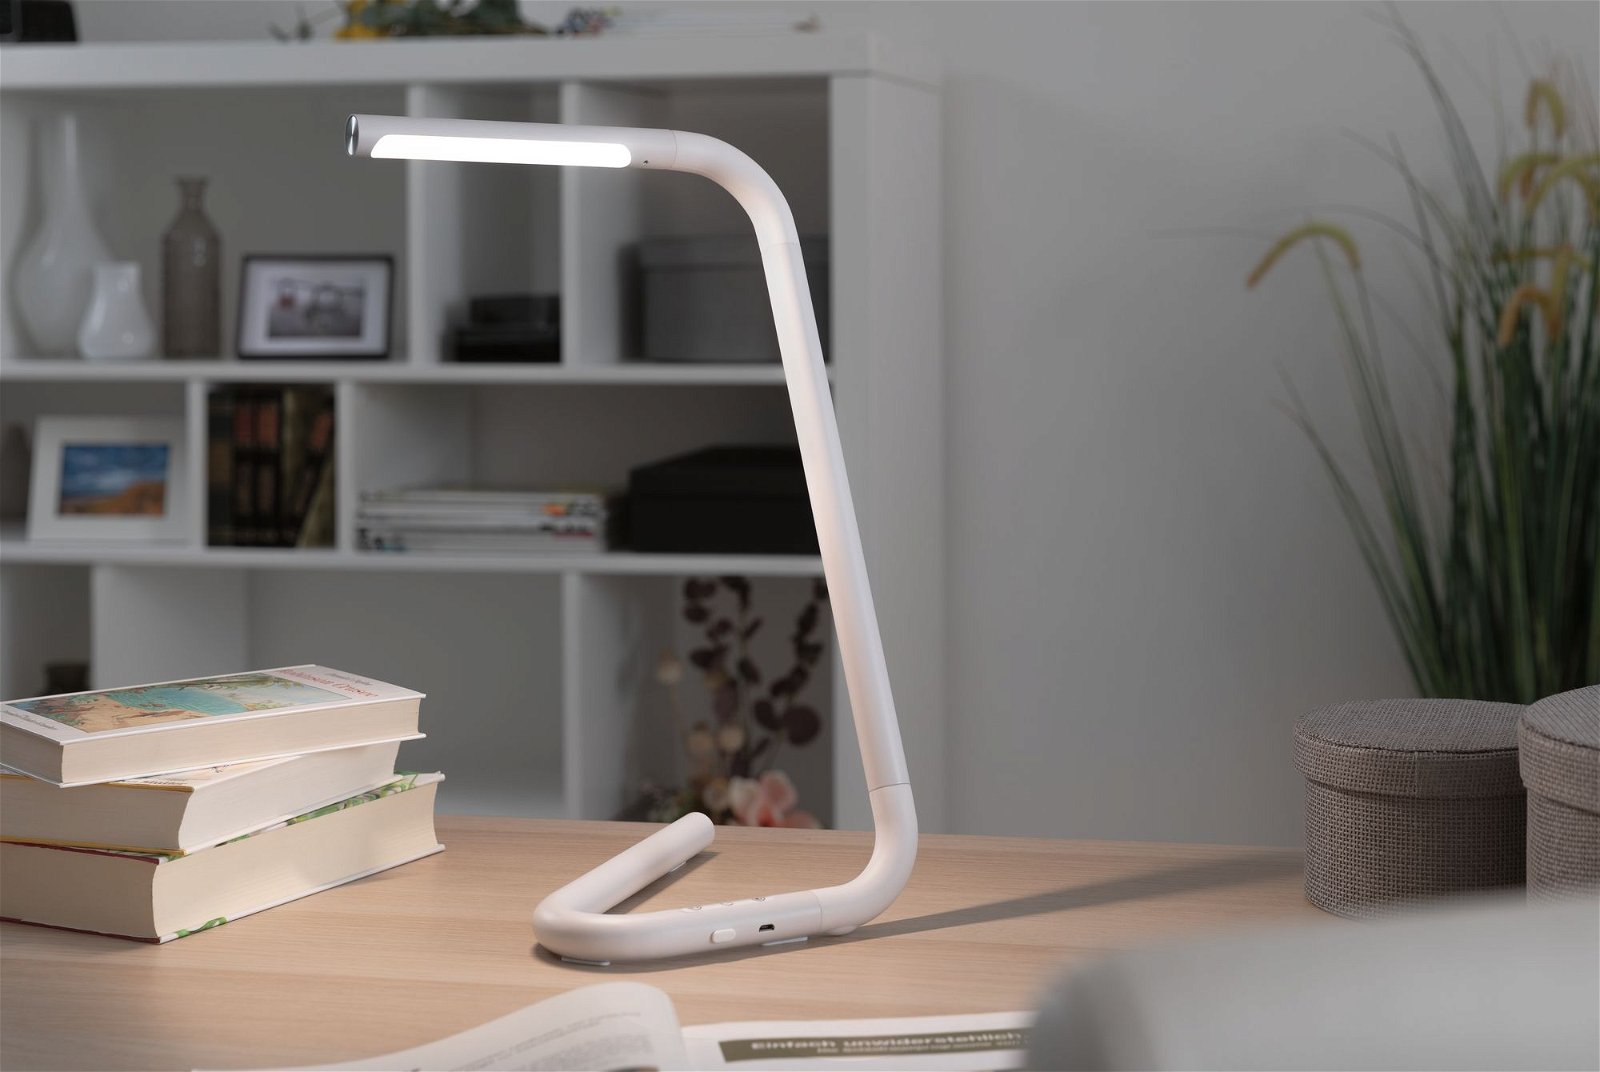 LED Schreibtischleuchte FlexLink Tunable White 370lm 4,5W Weiß